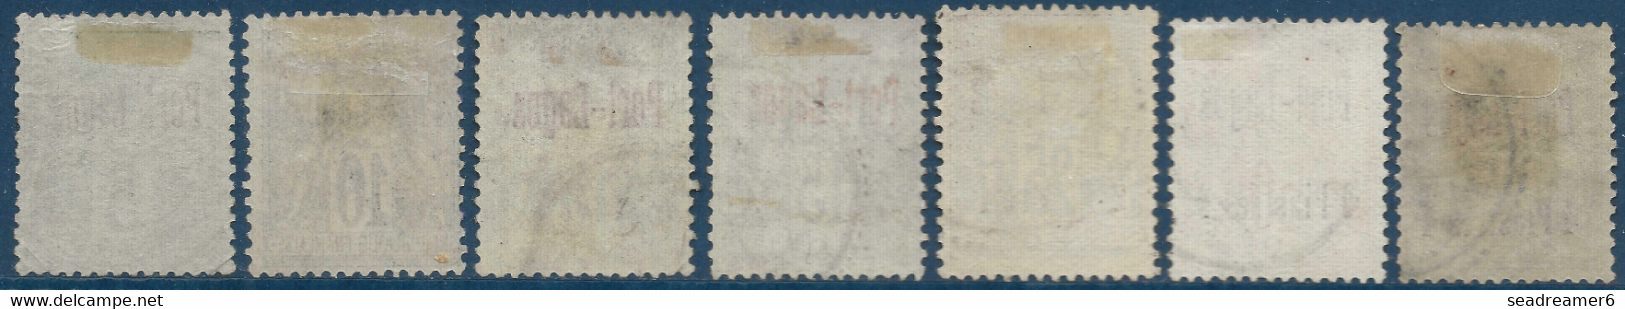 France Colonies 7 Timbres Port Lagos N°1 à 6 Et 3a Surcharge Rouge Oblitérés Et Tous TTB - Used Stamps